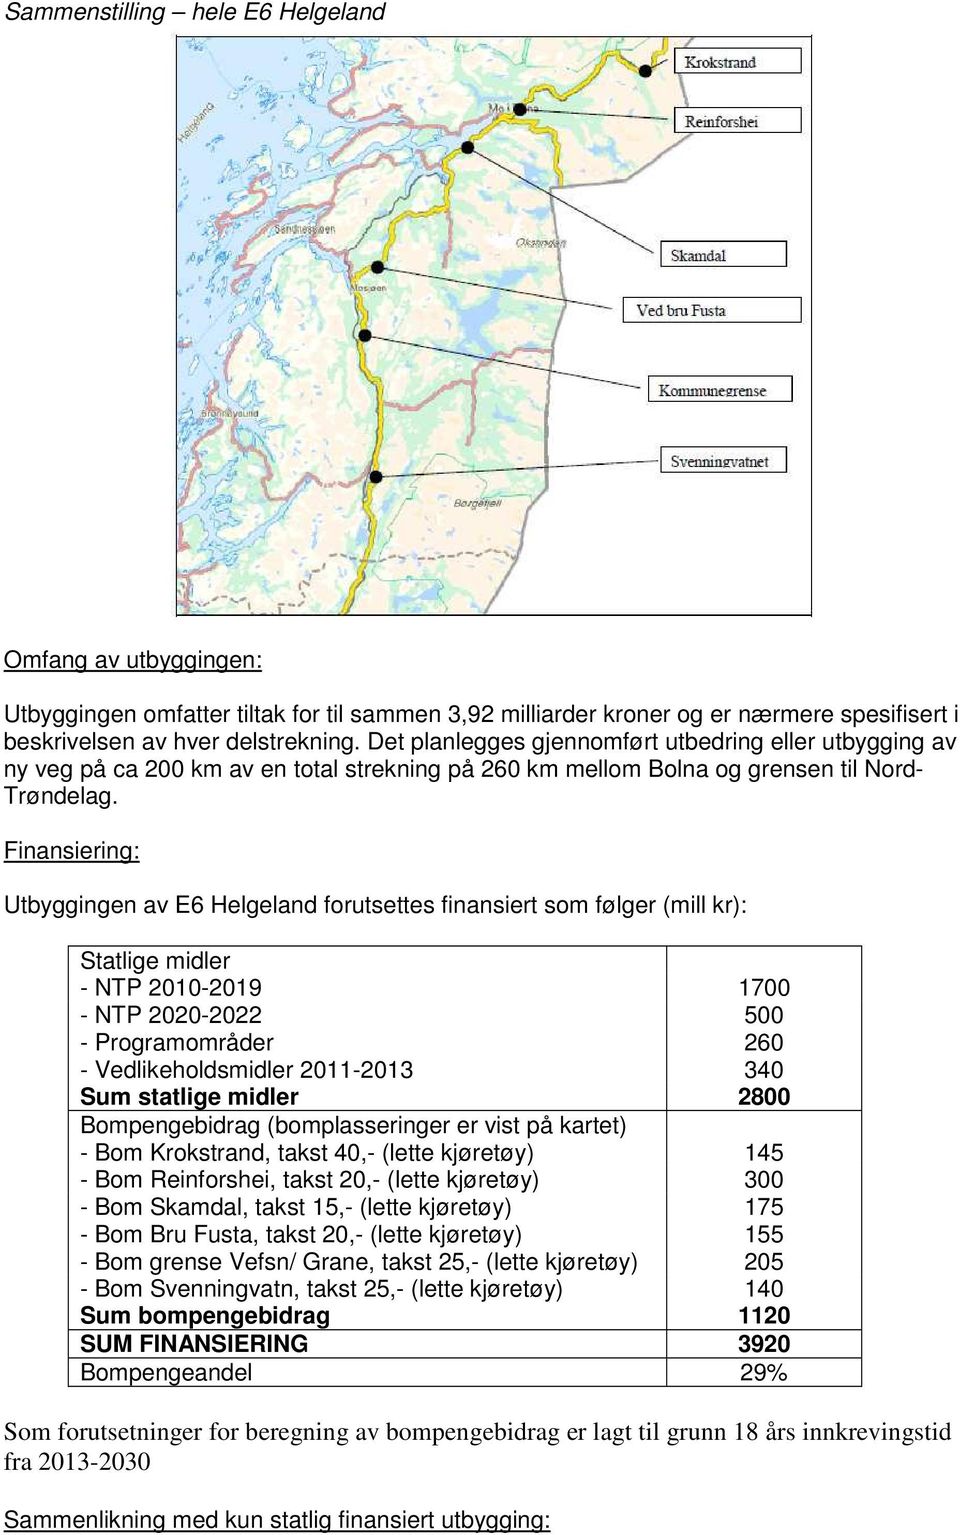 Finansiering: Utbyggingen av E6 Helgeland forutsettes finansiert som følger (mill kr): Statlige midler - NTP 2010-2019 1700 - NTP 2020-2022 500 - Programområder 260 - Vedlikeholdsmidler 2011-2013 340